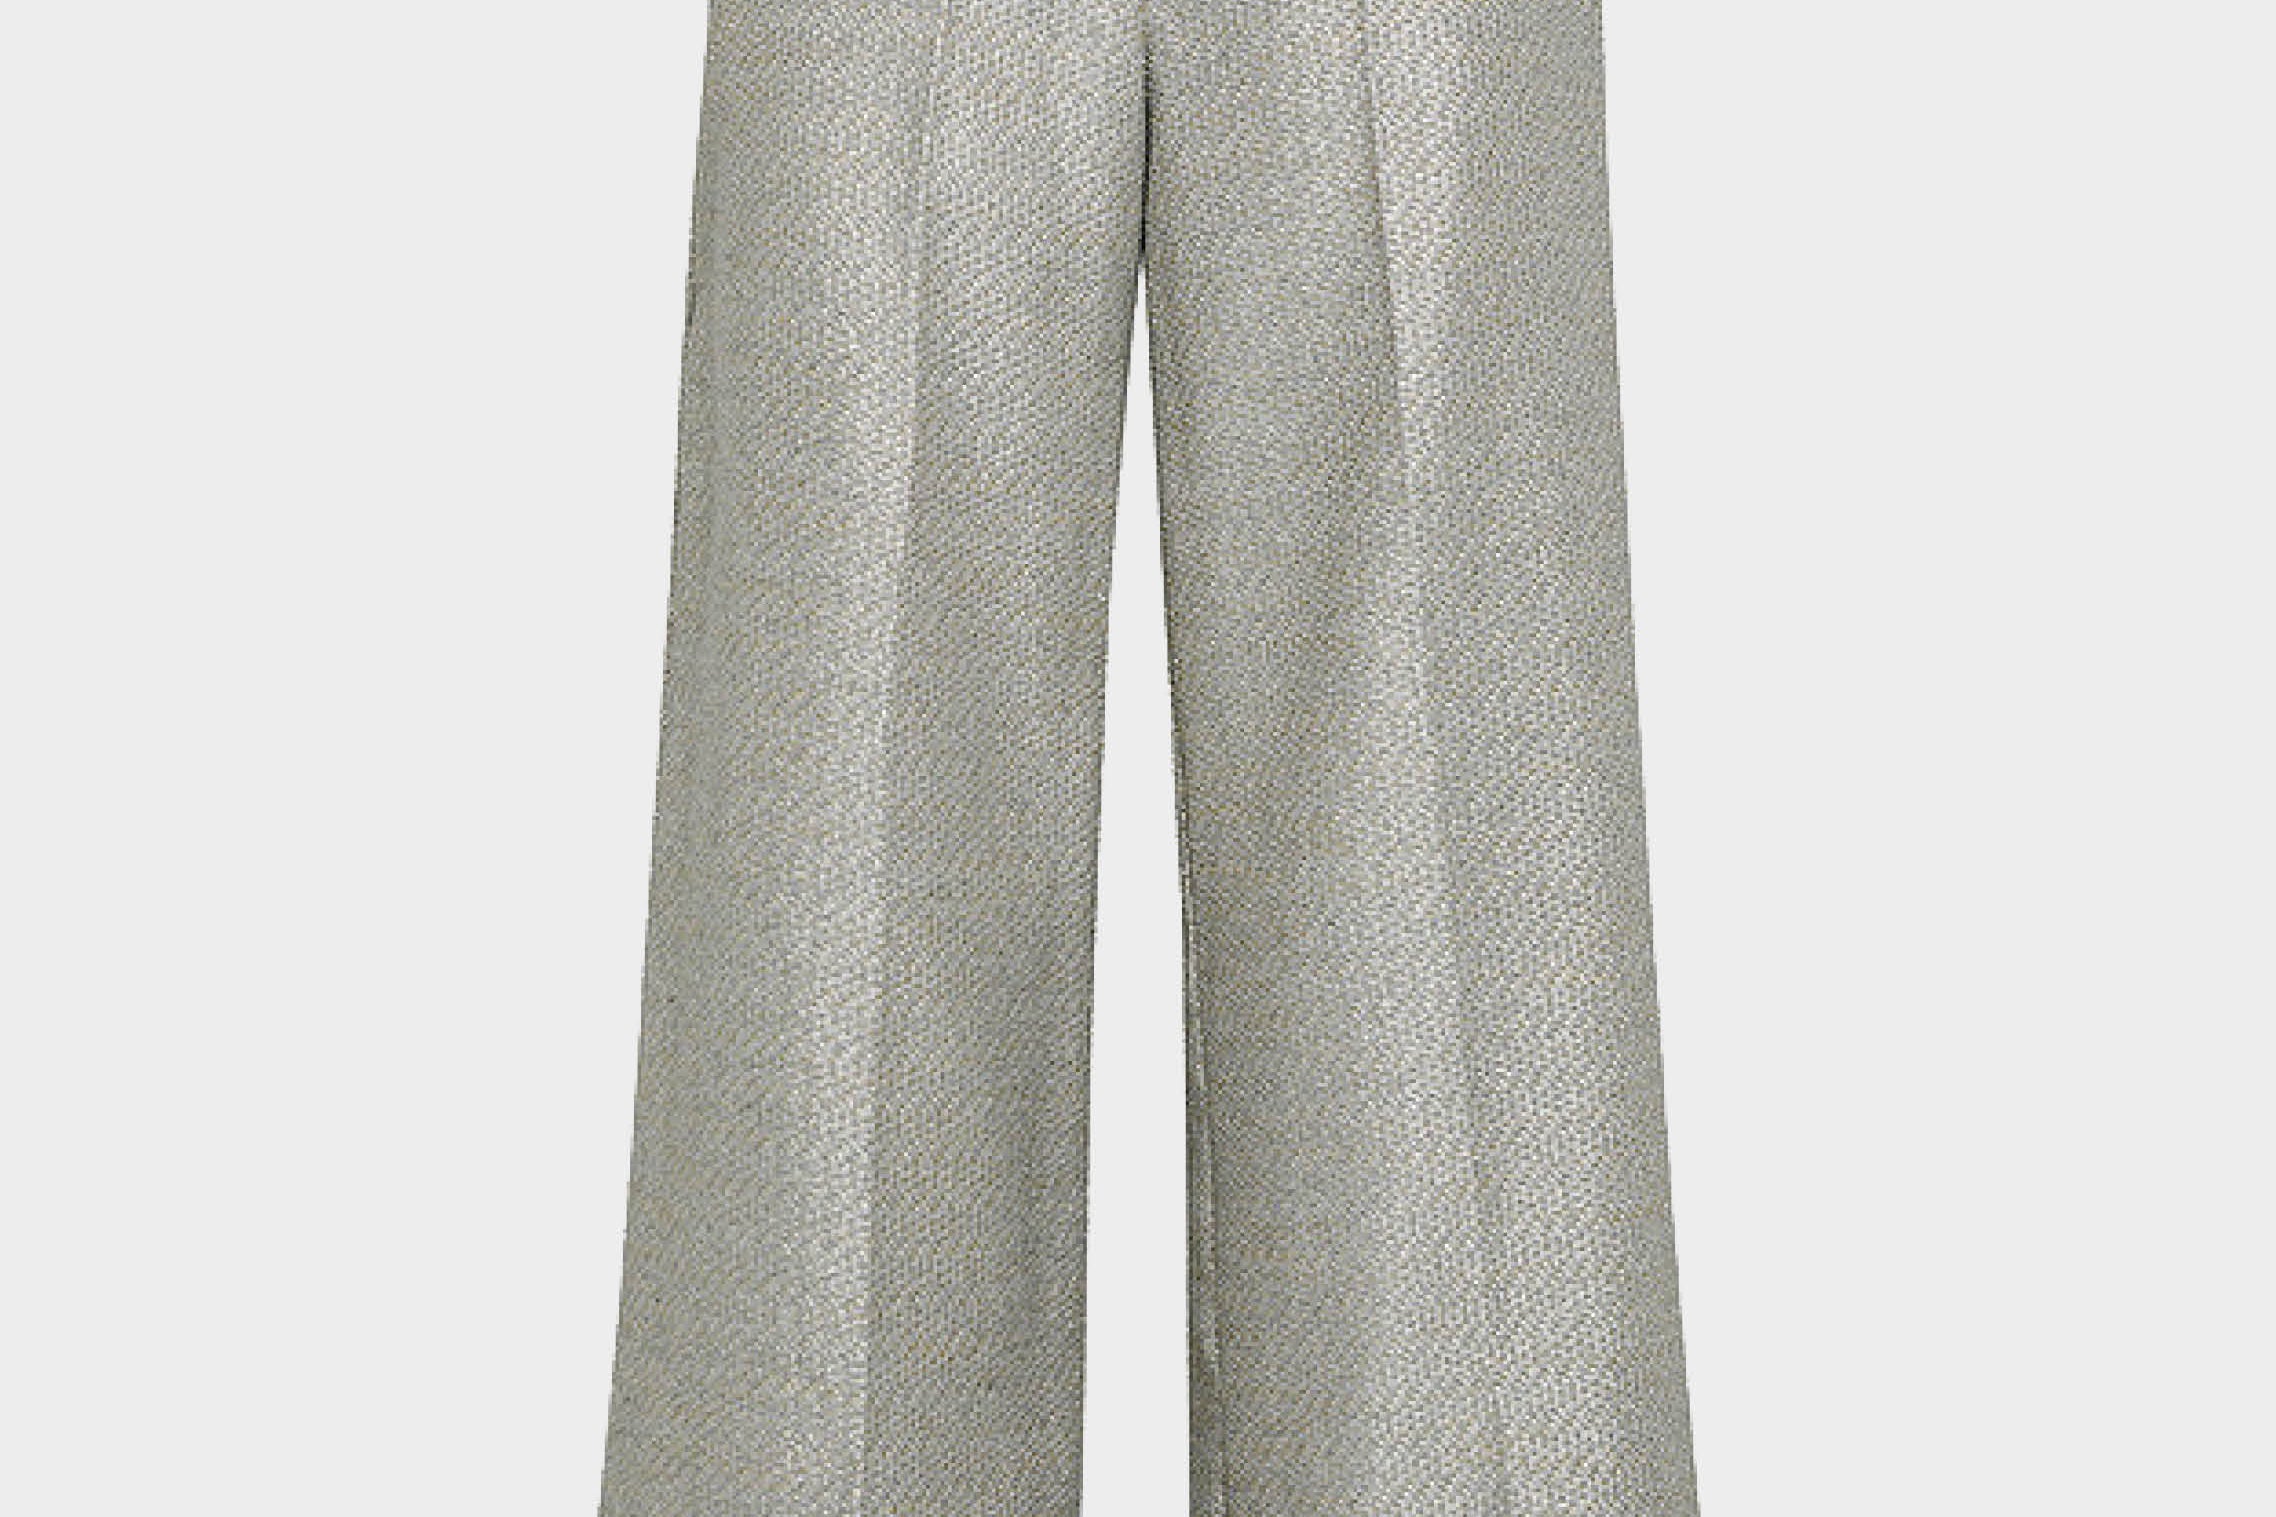 Pantalón wide leg de la firma italiana Forte Forte. Algodón lurex en color plateado. Cintura con trebillas y bolsillos laterales. Envíos gratuitos a partir de 200€. Devoluciones fáciles.